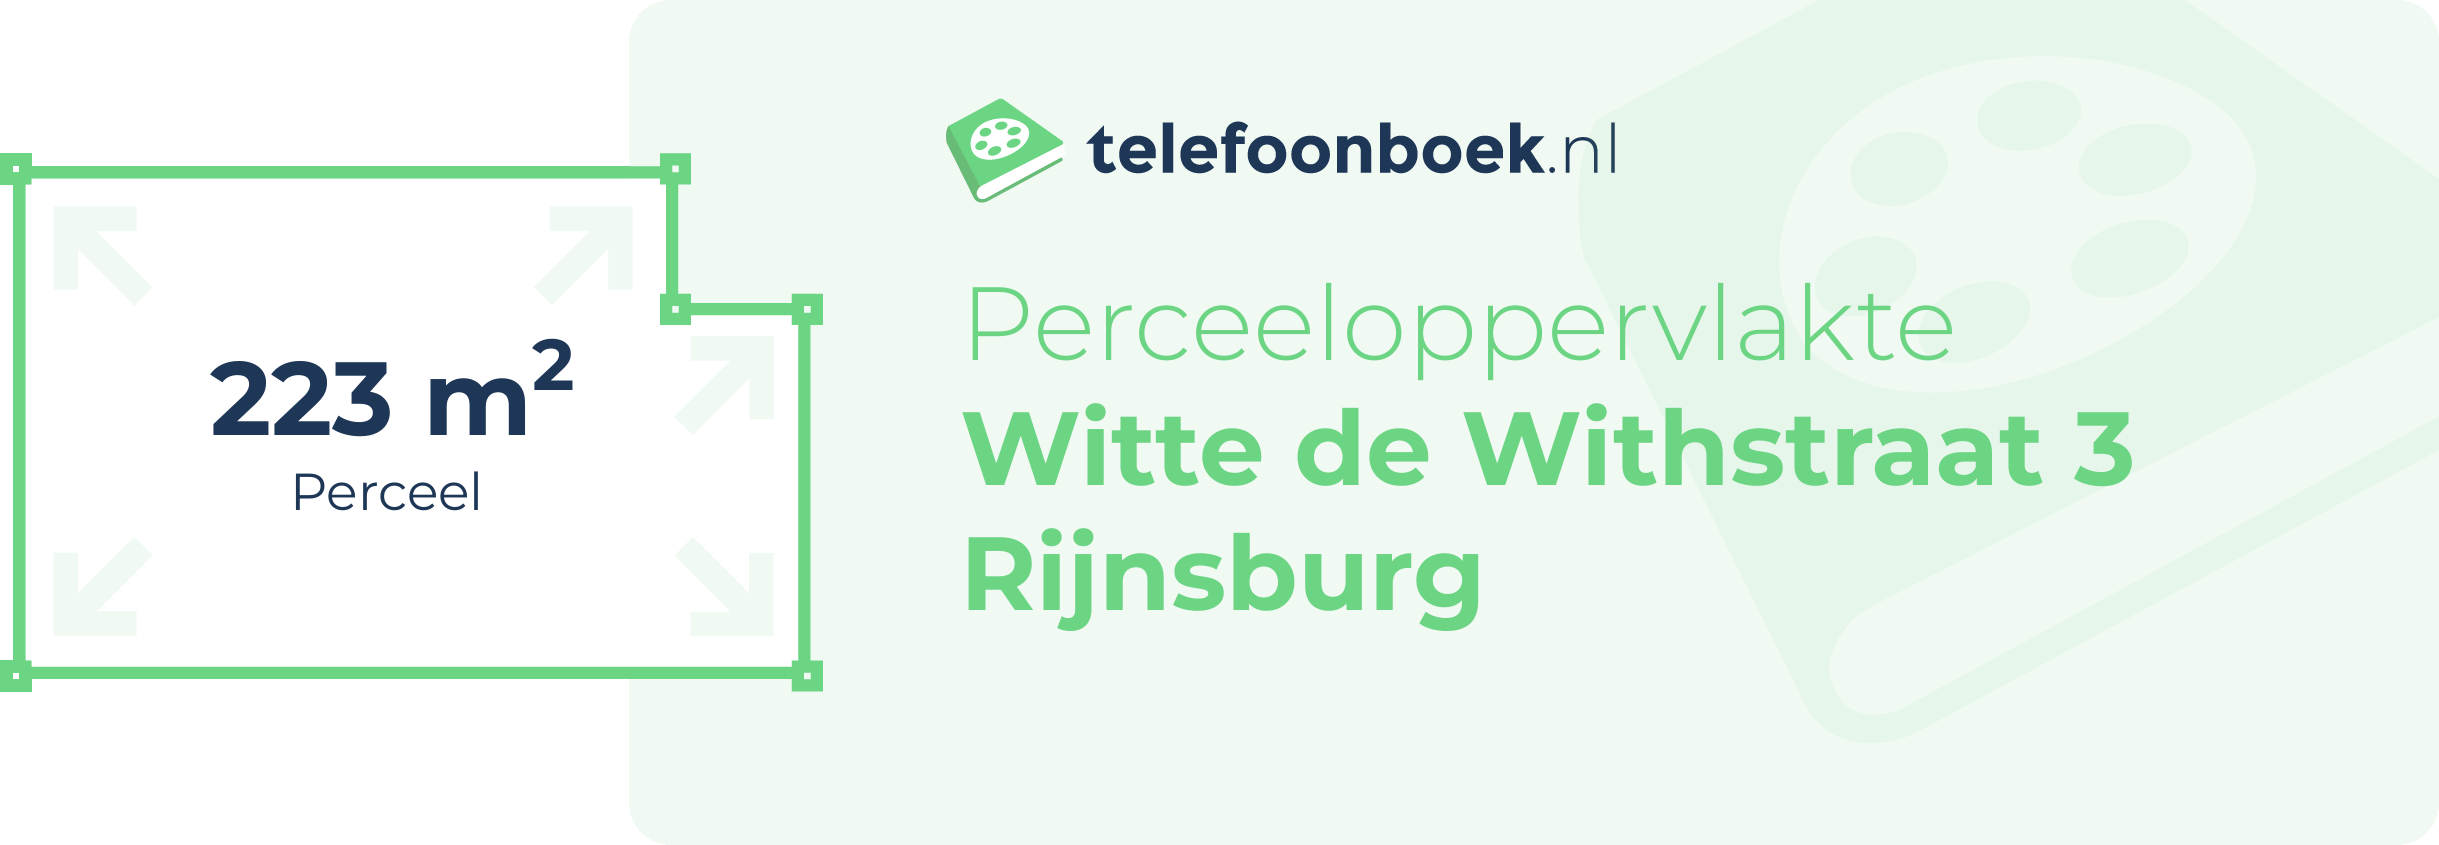 Perceeloppervlakte Witte De Withstraat 3 Rijnsburg